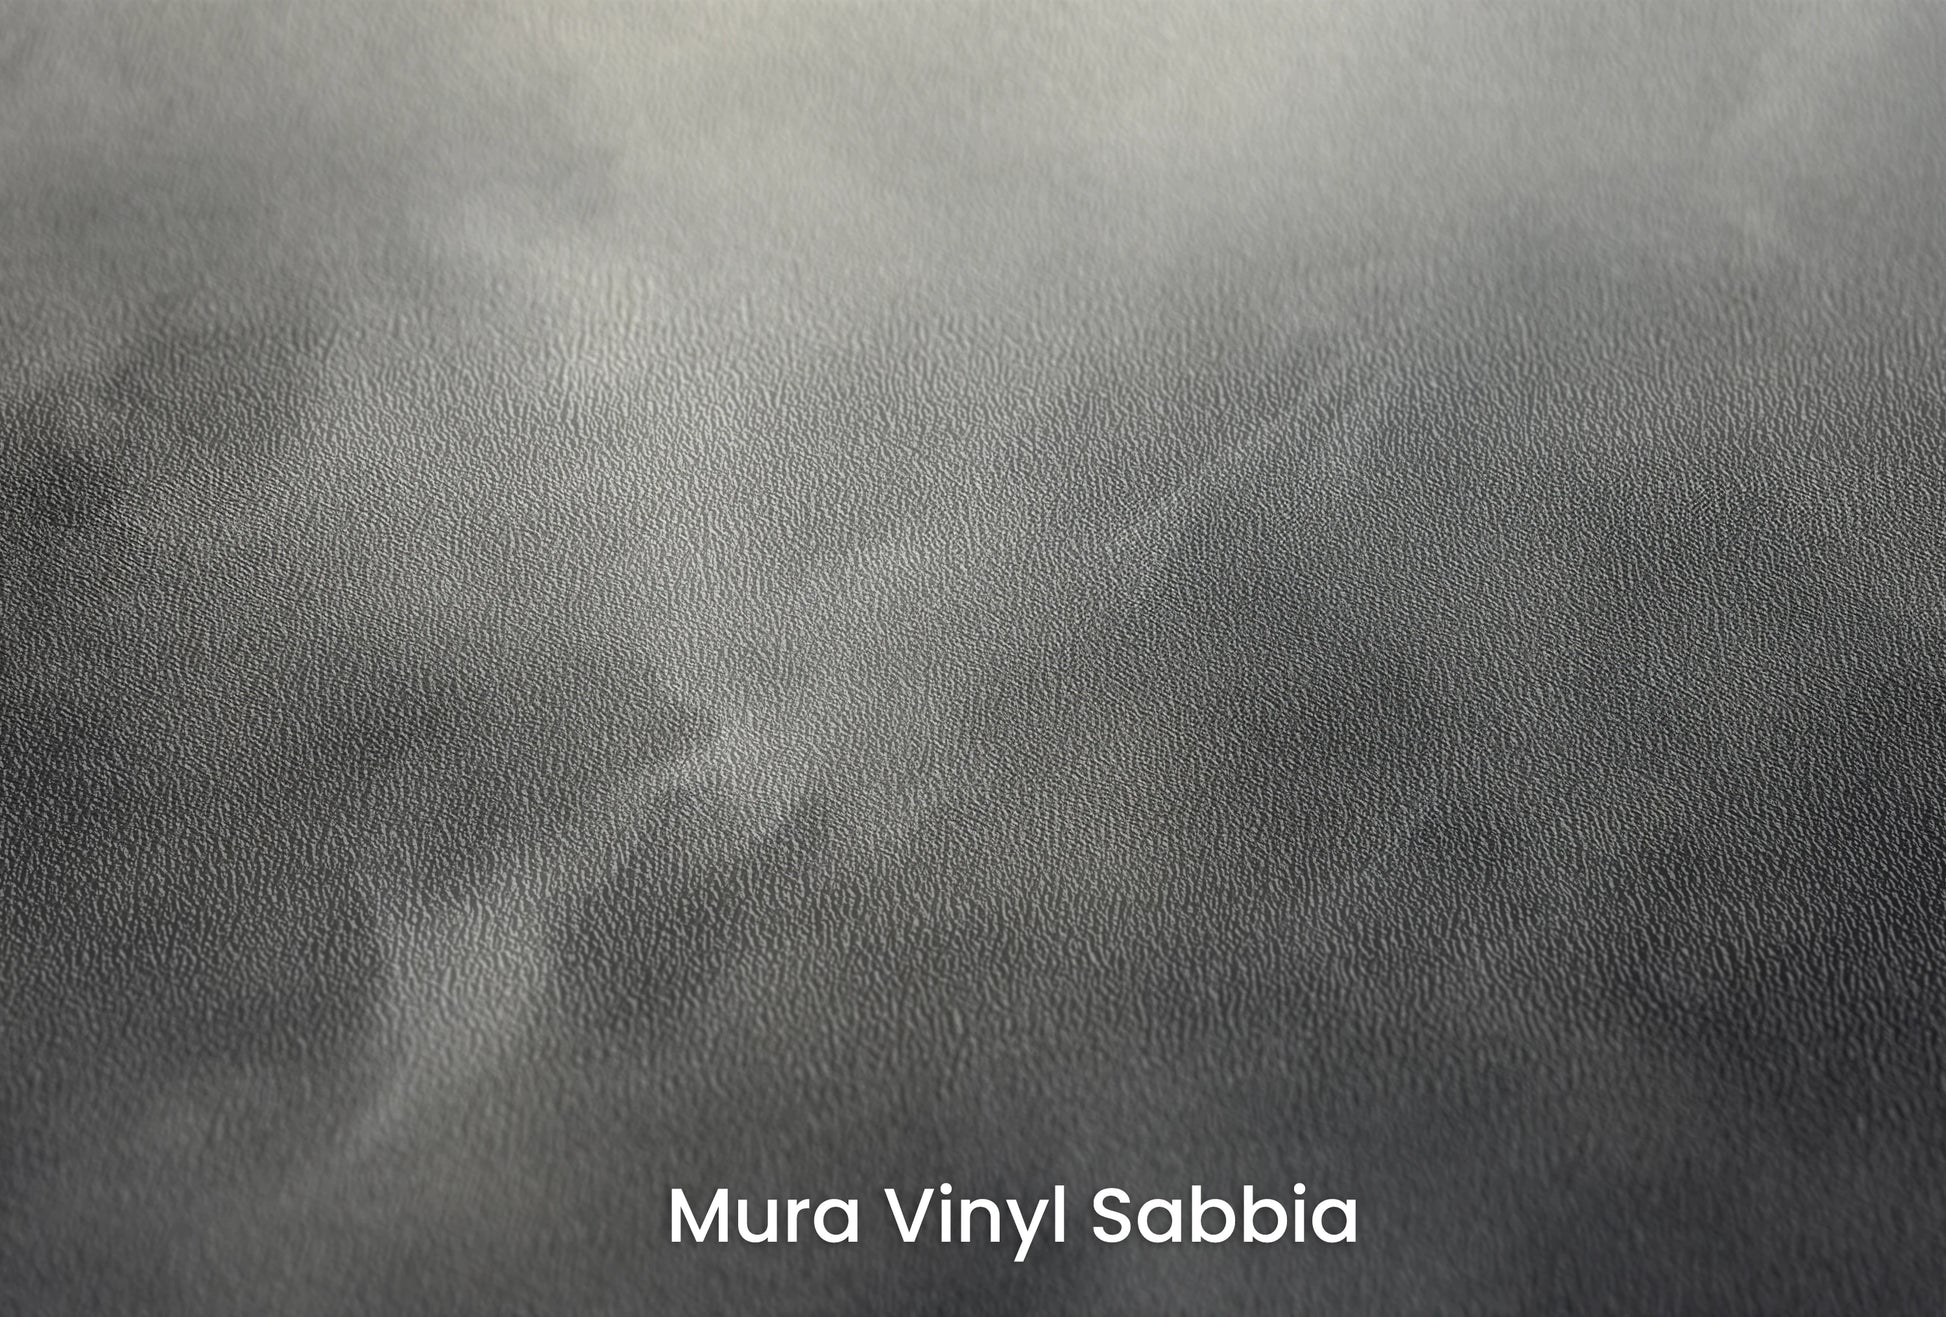 Zbliżenie na artystyczną fototapetę o nazwie Silver Storm na podłożu Mura Vinyl Sabbia struktura grubego ziarna piasku.